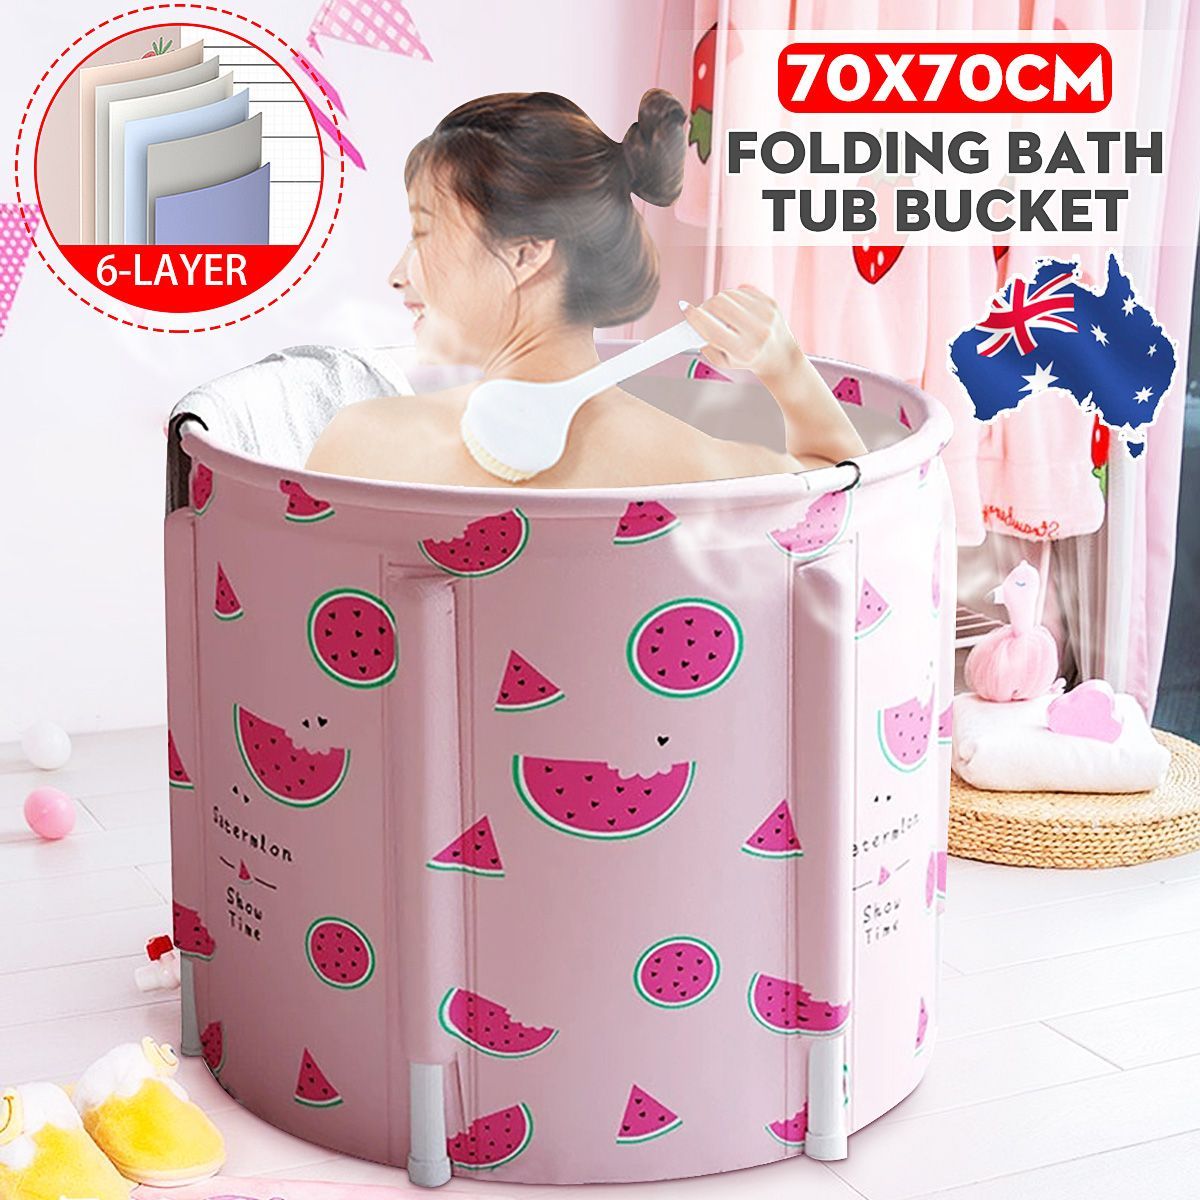 70x70CM-Portable-PVC-Folding-Bathtub-Water-Spa-Tub-Bath-Bucket-Outdoor-Bath-Tub-1757363